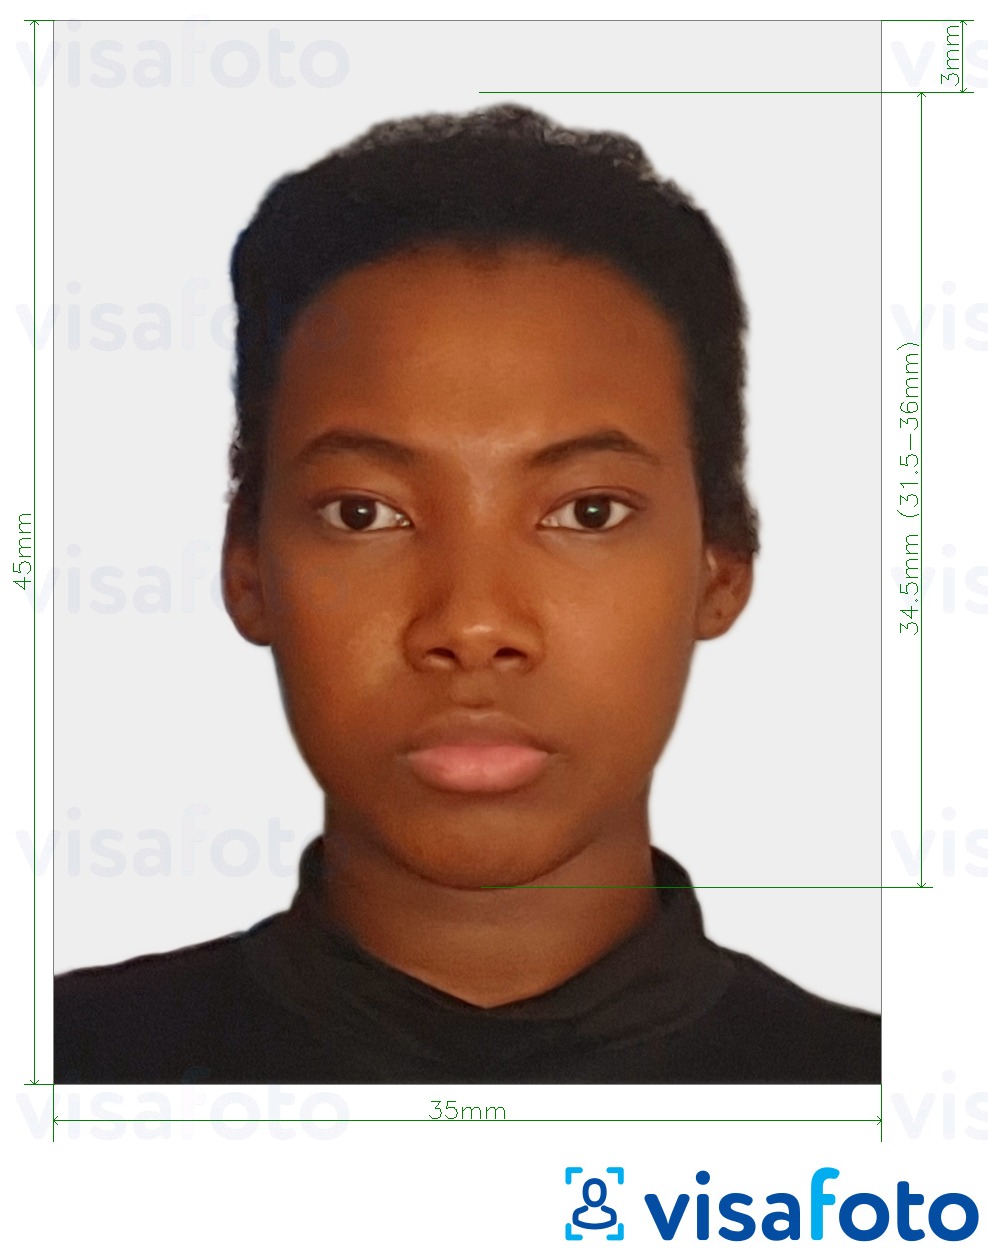 Primjer fotografije za Zimbabwe viza 35x45 mm (3,5x4,5 cm) s točno određenom veličinom